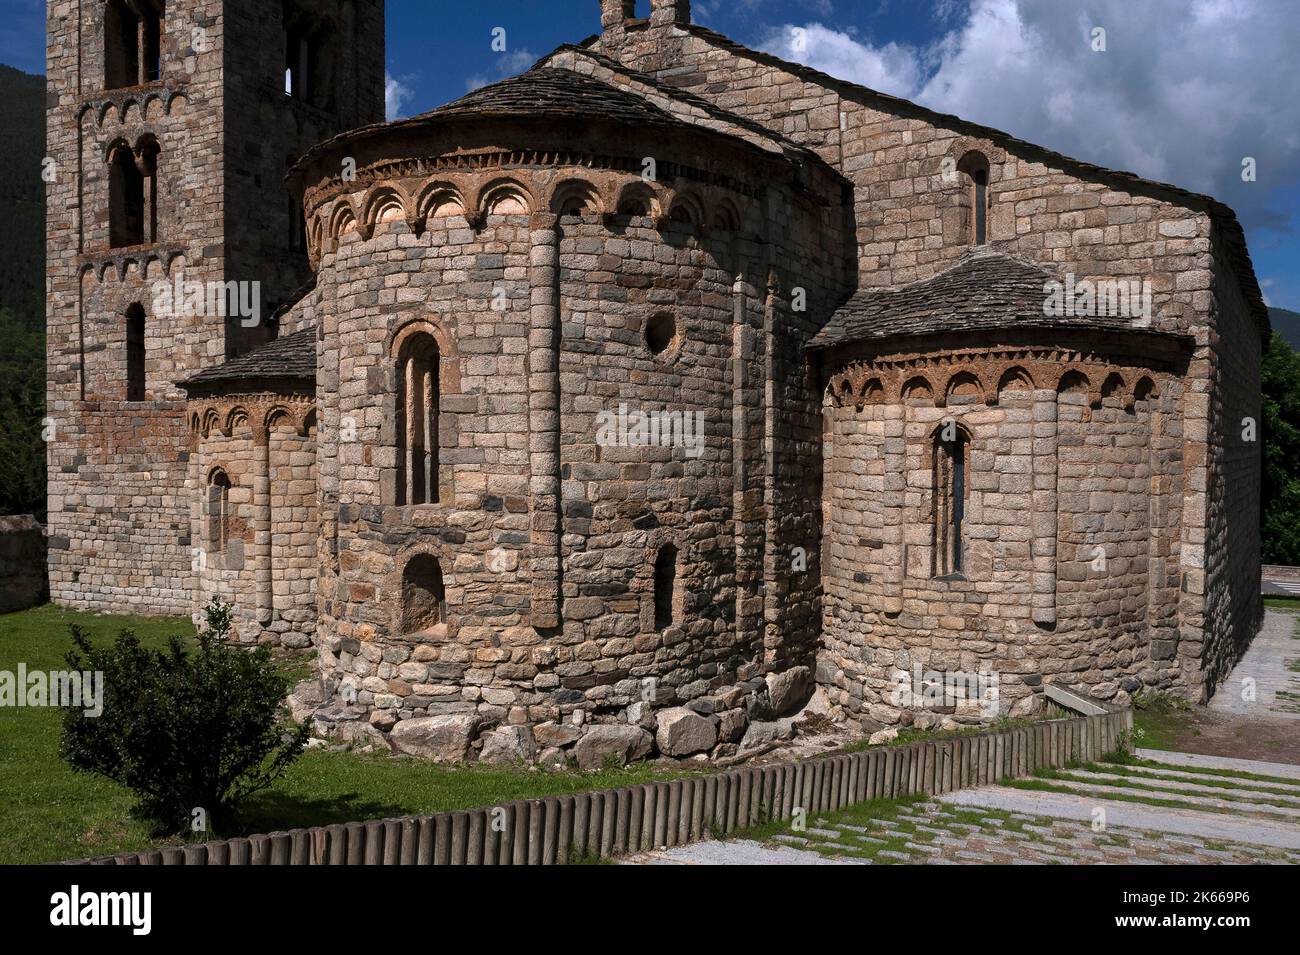 Église romane de Sant Climent, construite au début de 1100s, dans le village de Vall de Boí de Taüll, Catalogne, Espagne. L'église a trois apses orientales semi-circulaires, toutes avec une simple décoration Lombard et des fenêtres à fentes rondes, et un beffroi de style italien. Banque D'Images